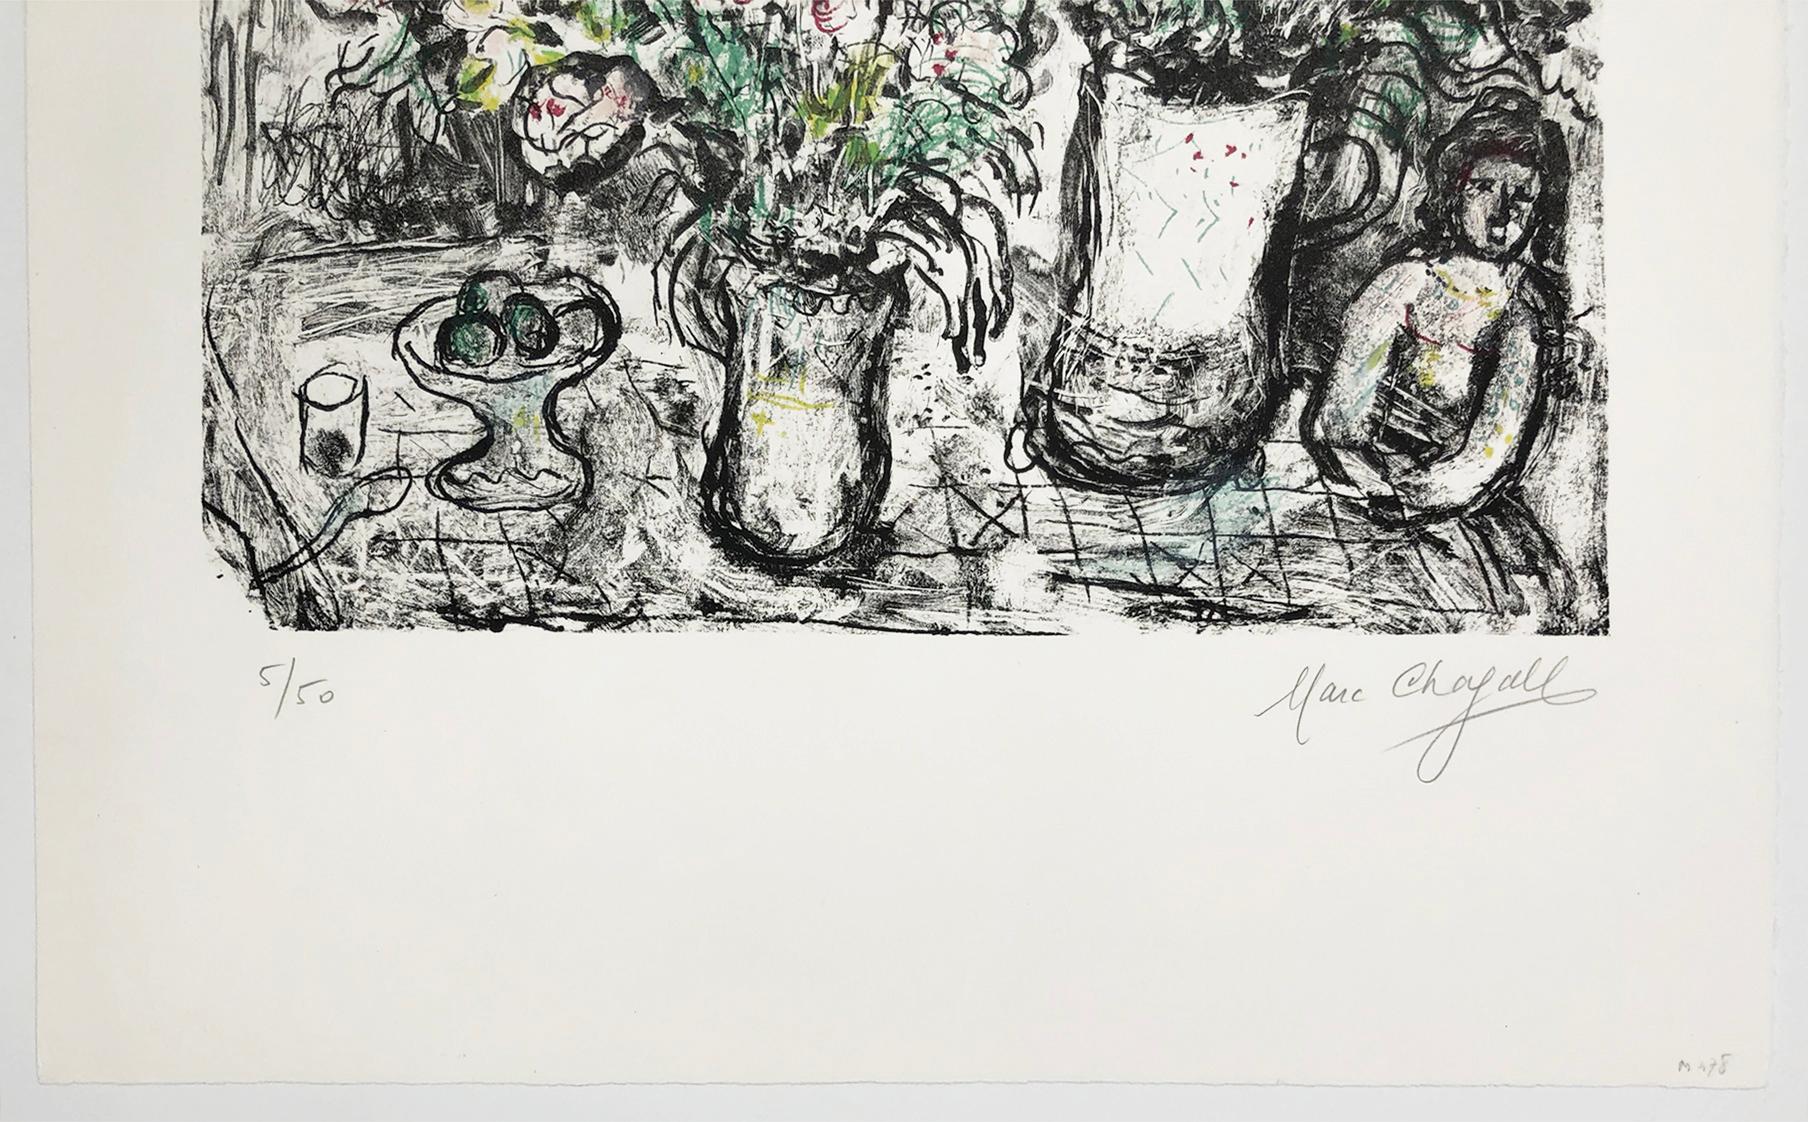 FLEURS DEVANT LA FENETRE (MOURLOT 478) - Surrealist Print by Marc Chagall